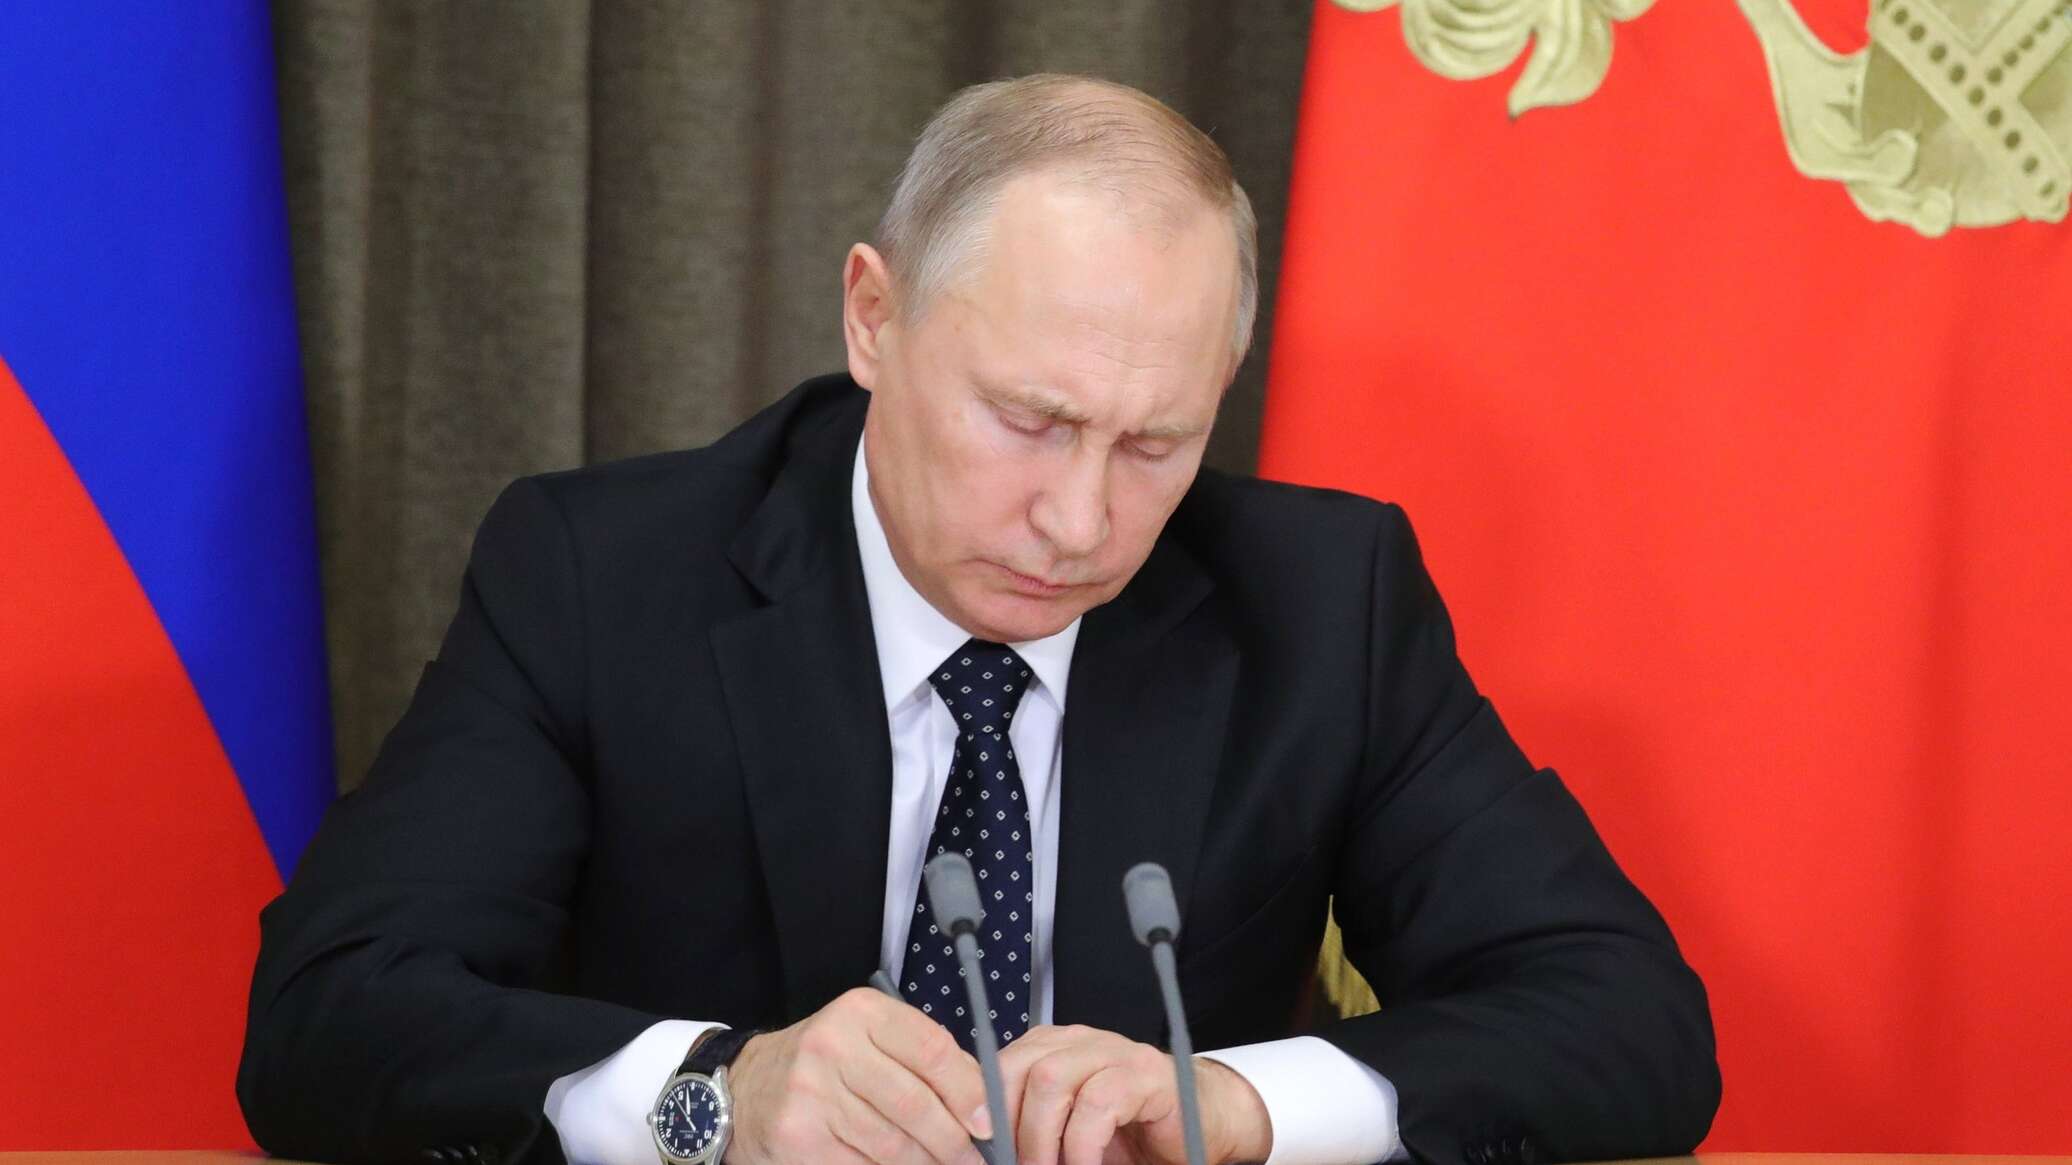 بوتين يوقع   قانونًا يعتبر الثلاثين من سبتمبر يوما للاحتفال الرسمى بإعادة توحيد الأقاليم الجديدة 